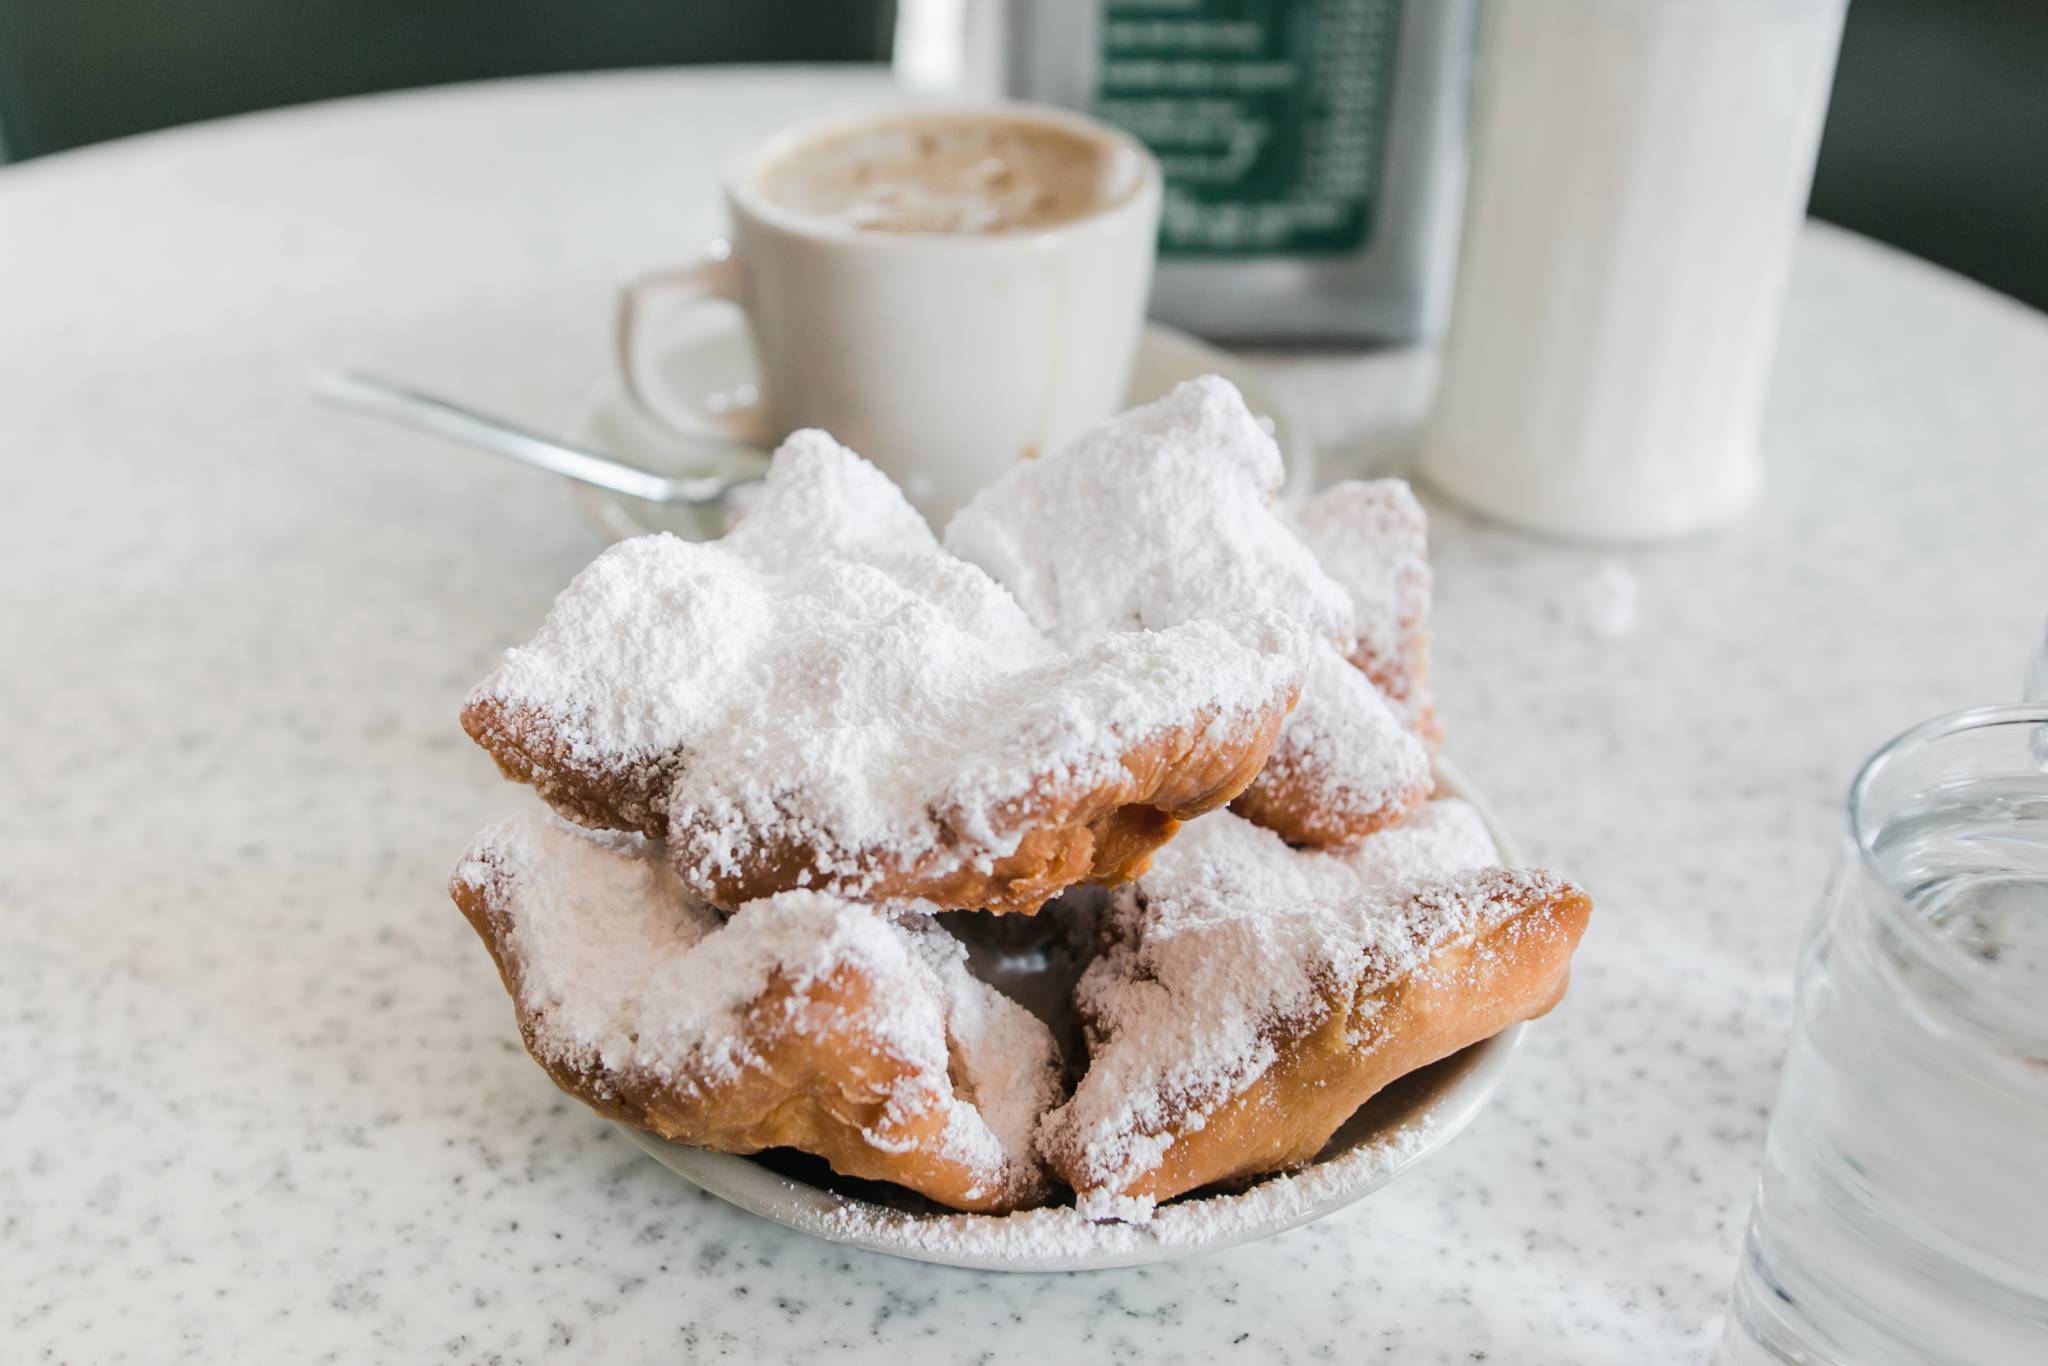 Café Au Lait & Beignets: A New Orleans Treat